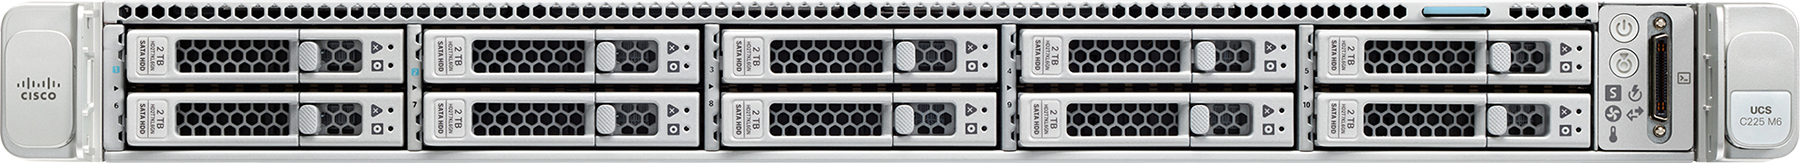 Cisco UCS servers